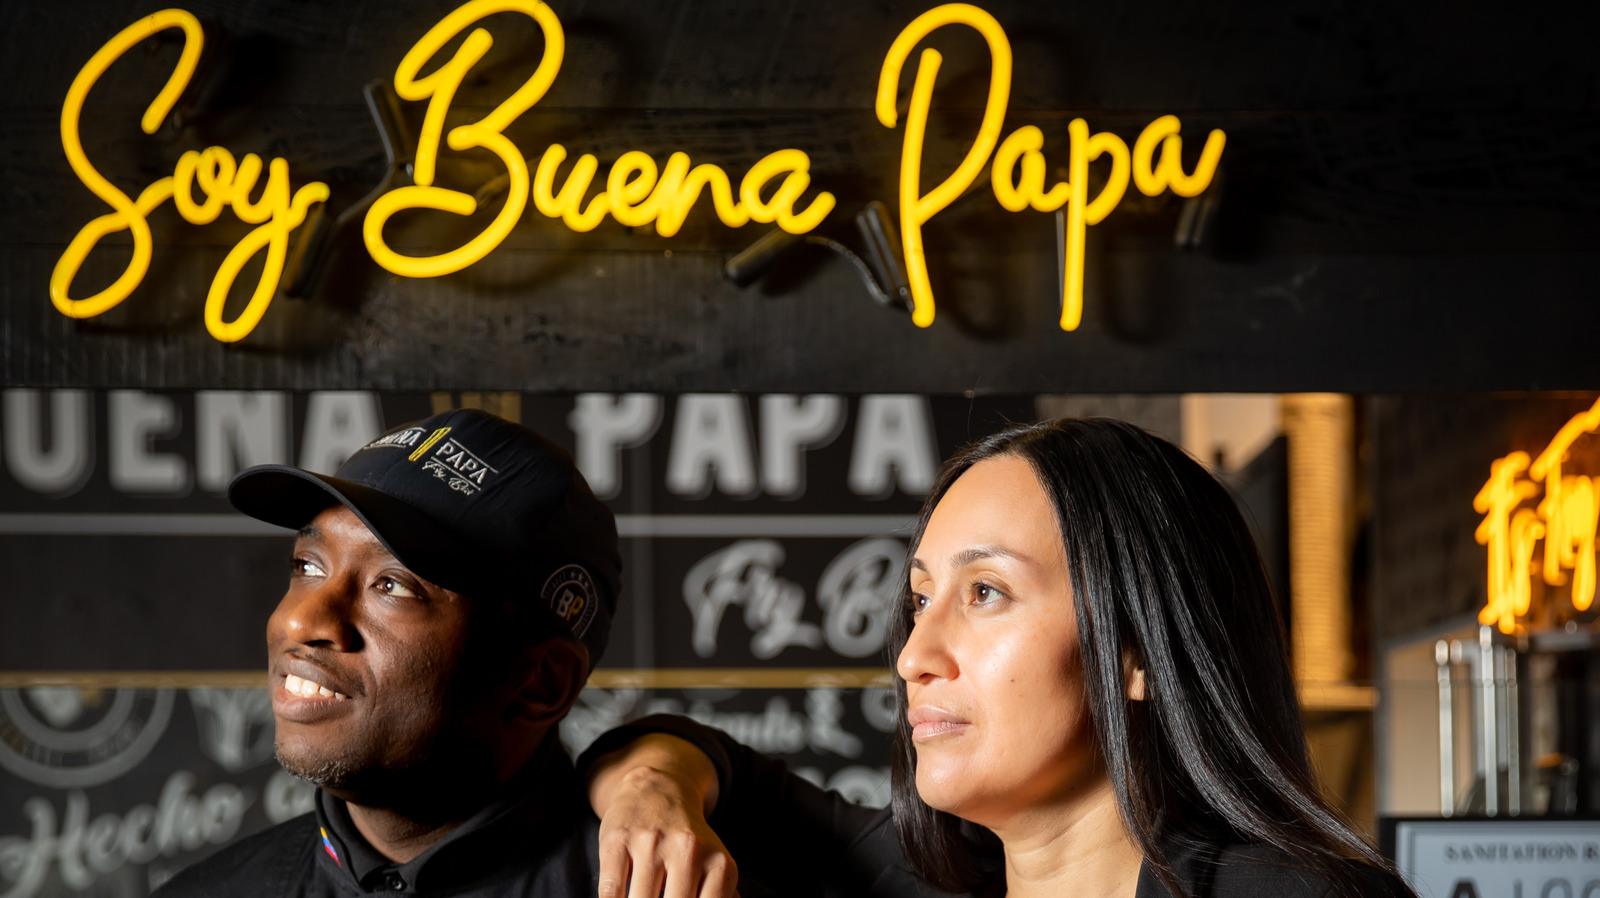 Buena Papa Fry Bar Morgan Street Food Hall - El Americano (the american)